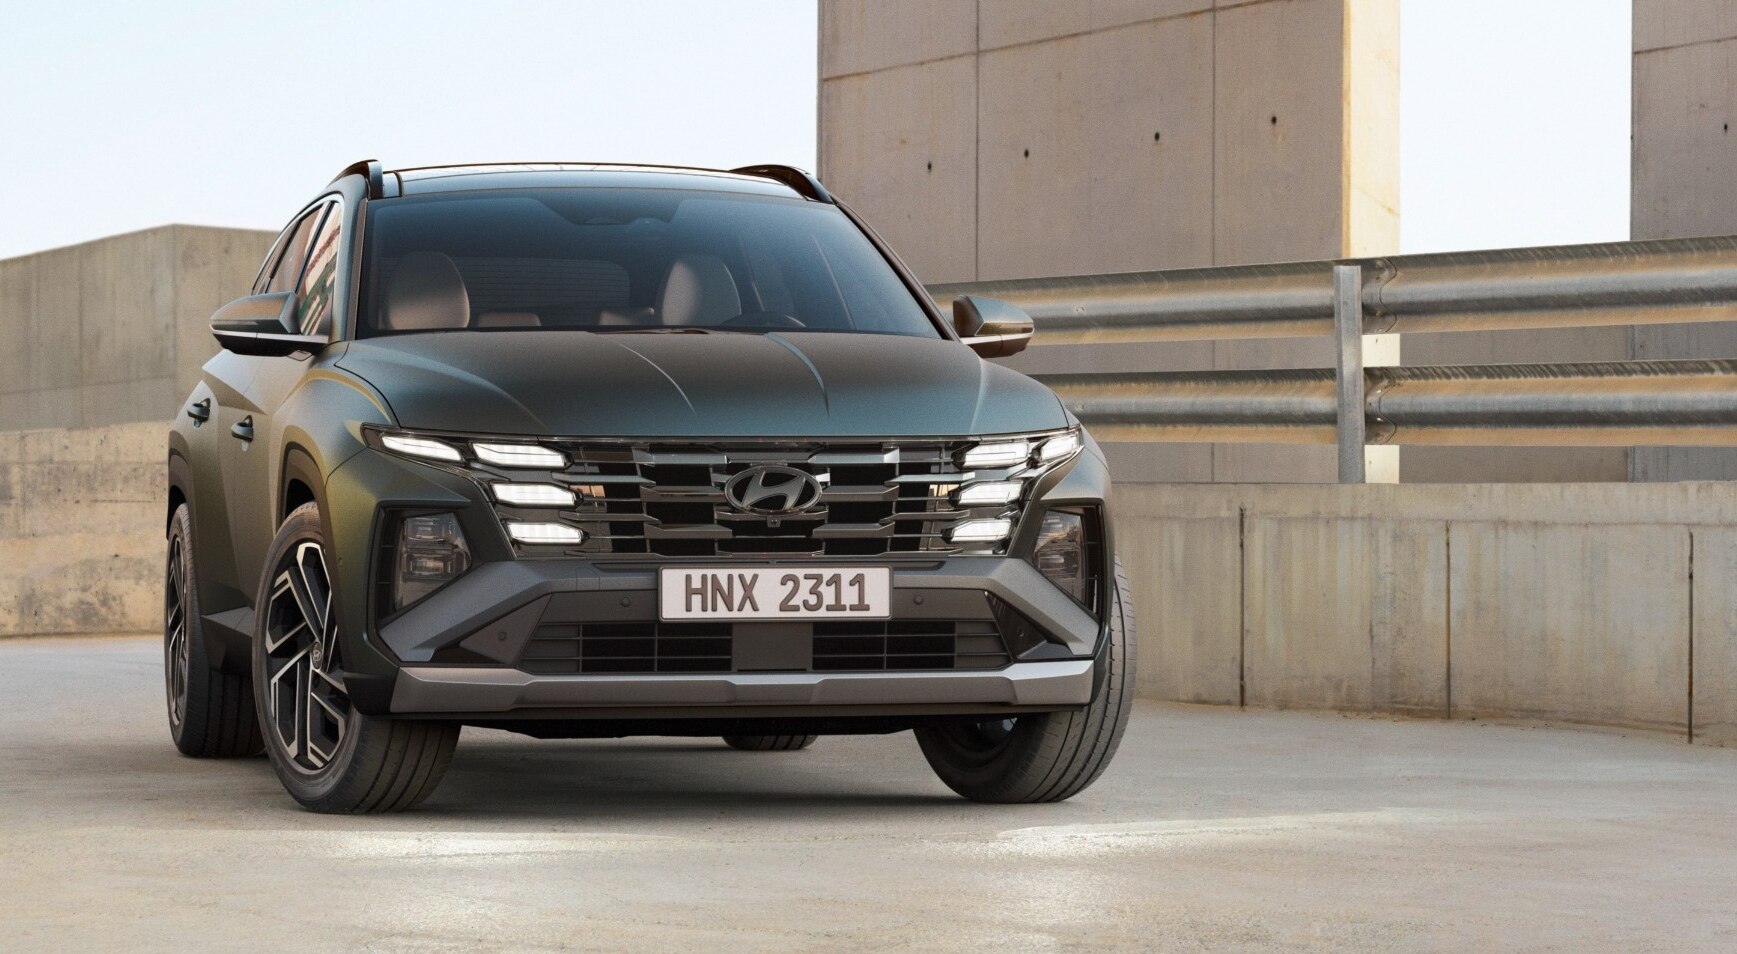 Hyundai Tucson Facelift: हुंडई ने किया टक्सन फेसलिफ्ट का खुलासा, अगले साल होगी भारत में लॉन्च 